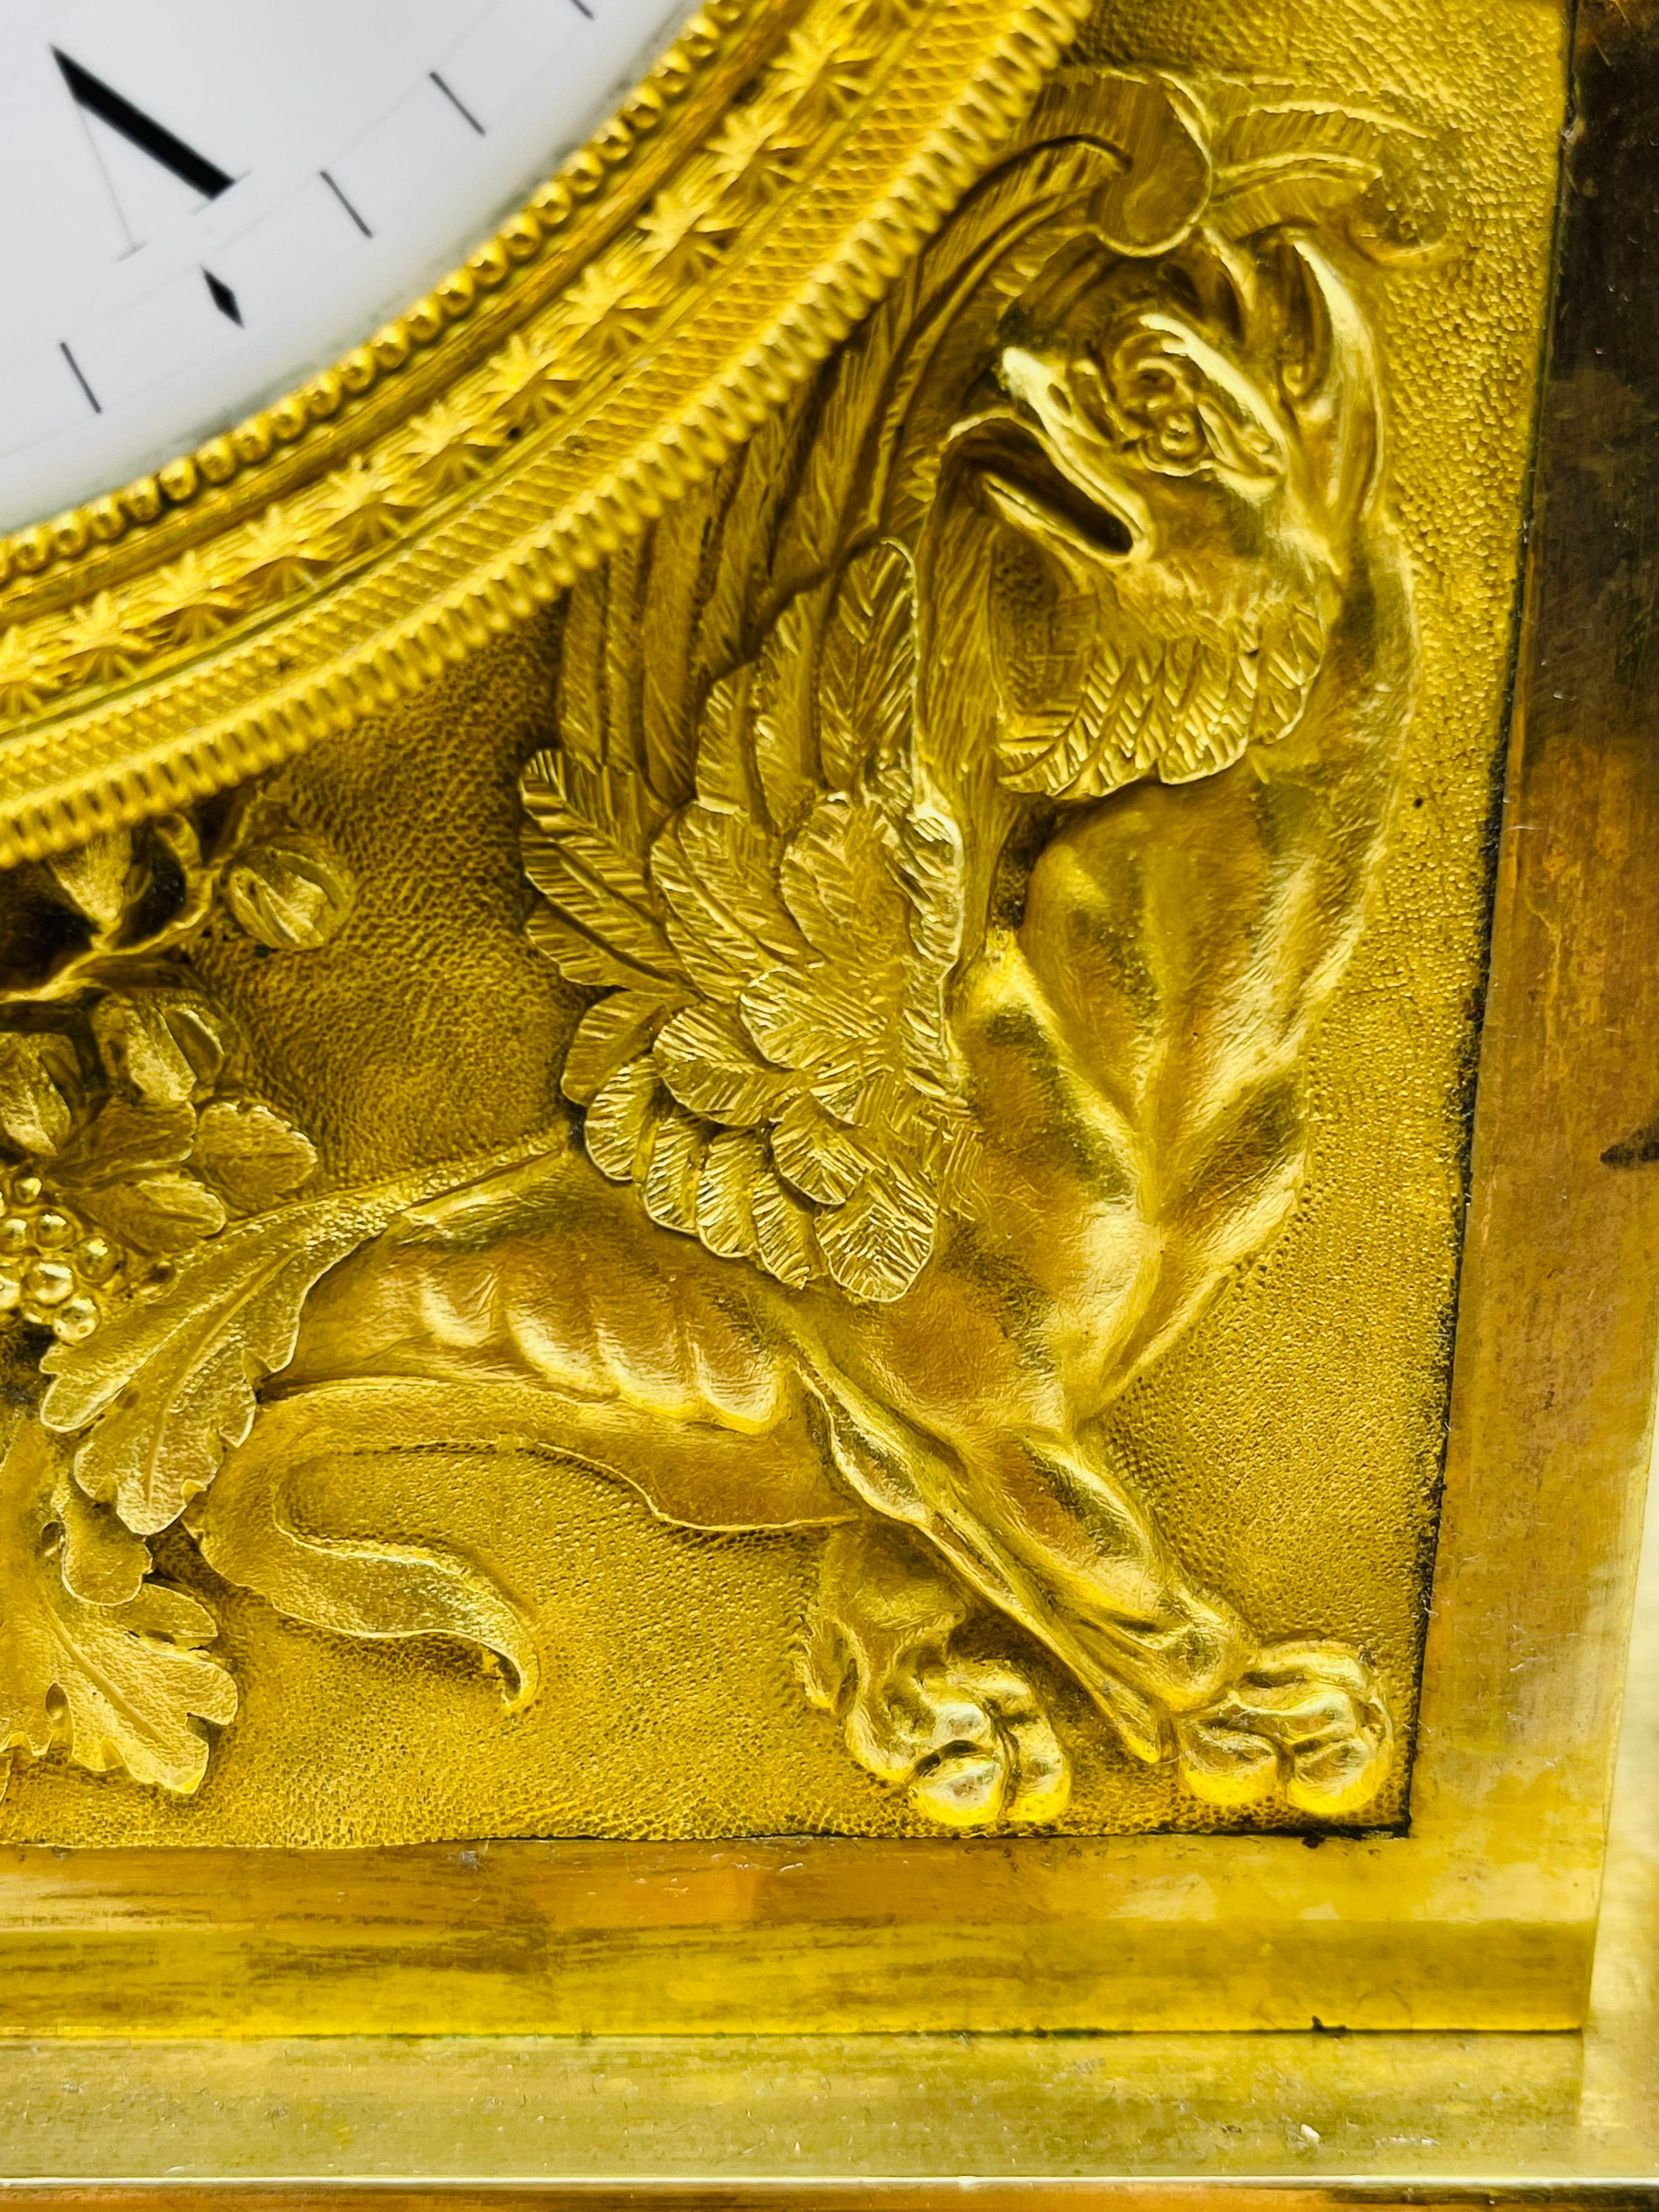 Pendule royale Empire, dorée au feu, vers 1805-1815, Paris

Bronze massif, doré au feu, Paris vers 1805-1815, original Empire français de la première période.

Représentation d'une vierge en armure tenant un miroir. Un véritable